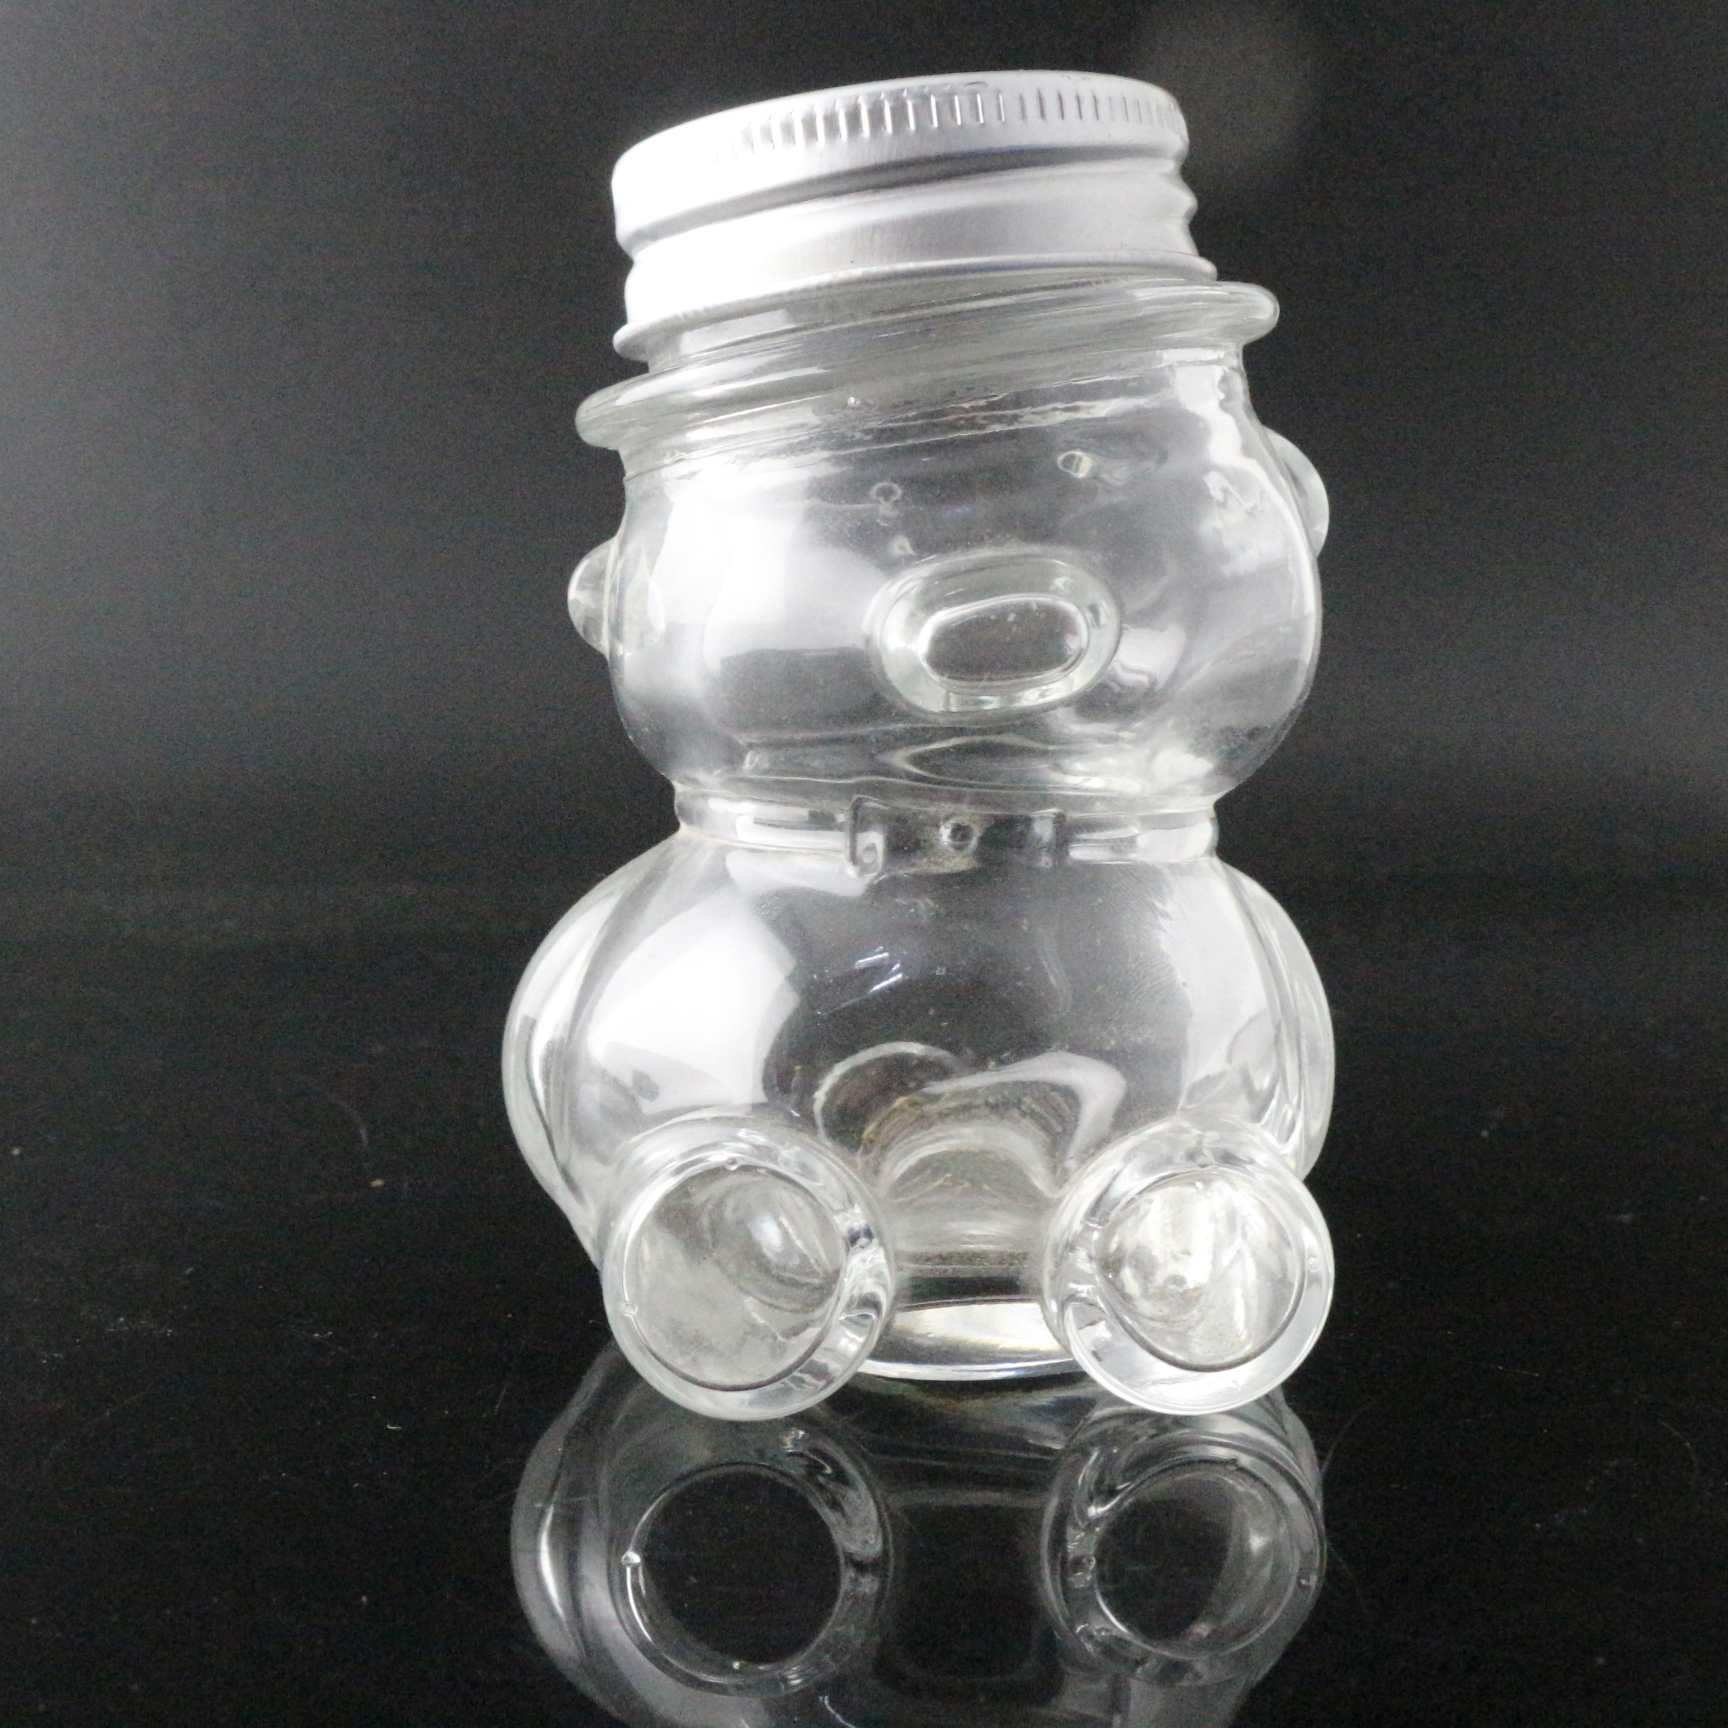 9 oz Honey Bear Shaped Candy Glass Jar Glass Bottle With Black White Gold Metal Lid 8oz 7oz 6oz 5oz 4oz 3oz 2oz 1oz